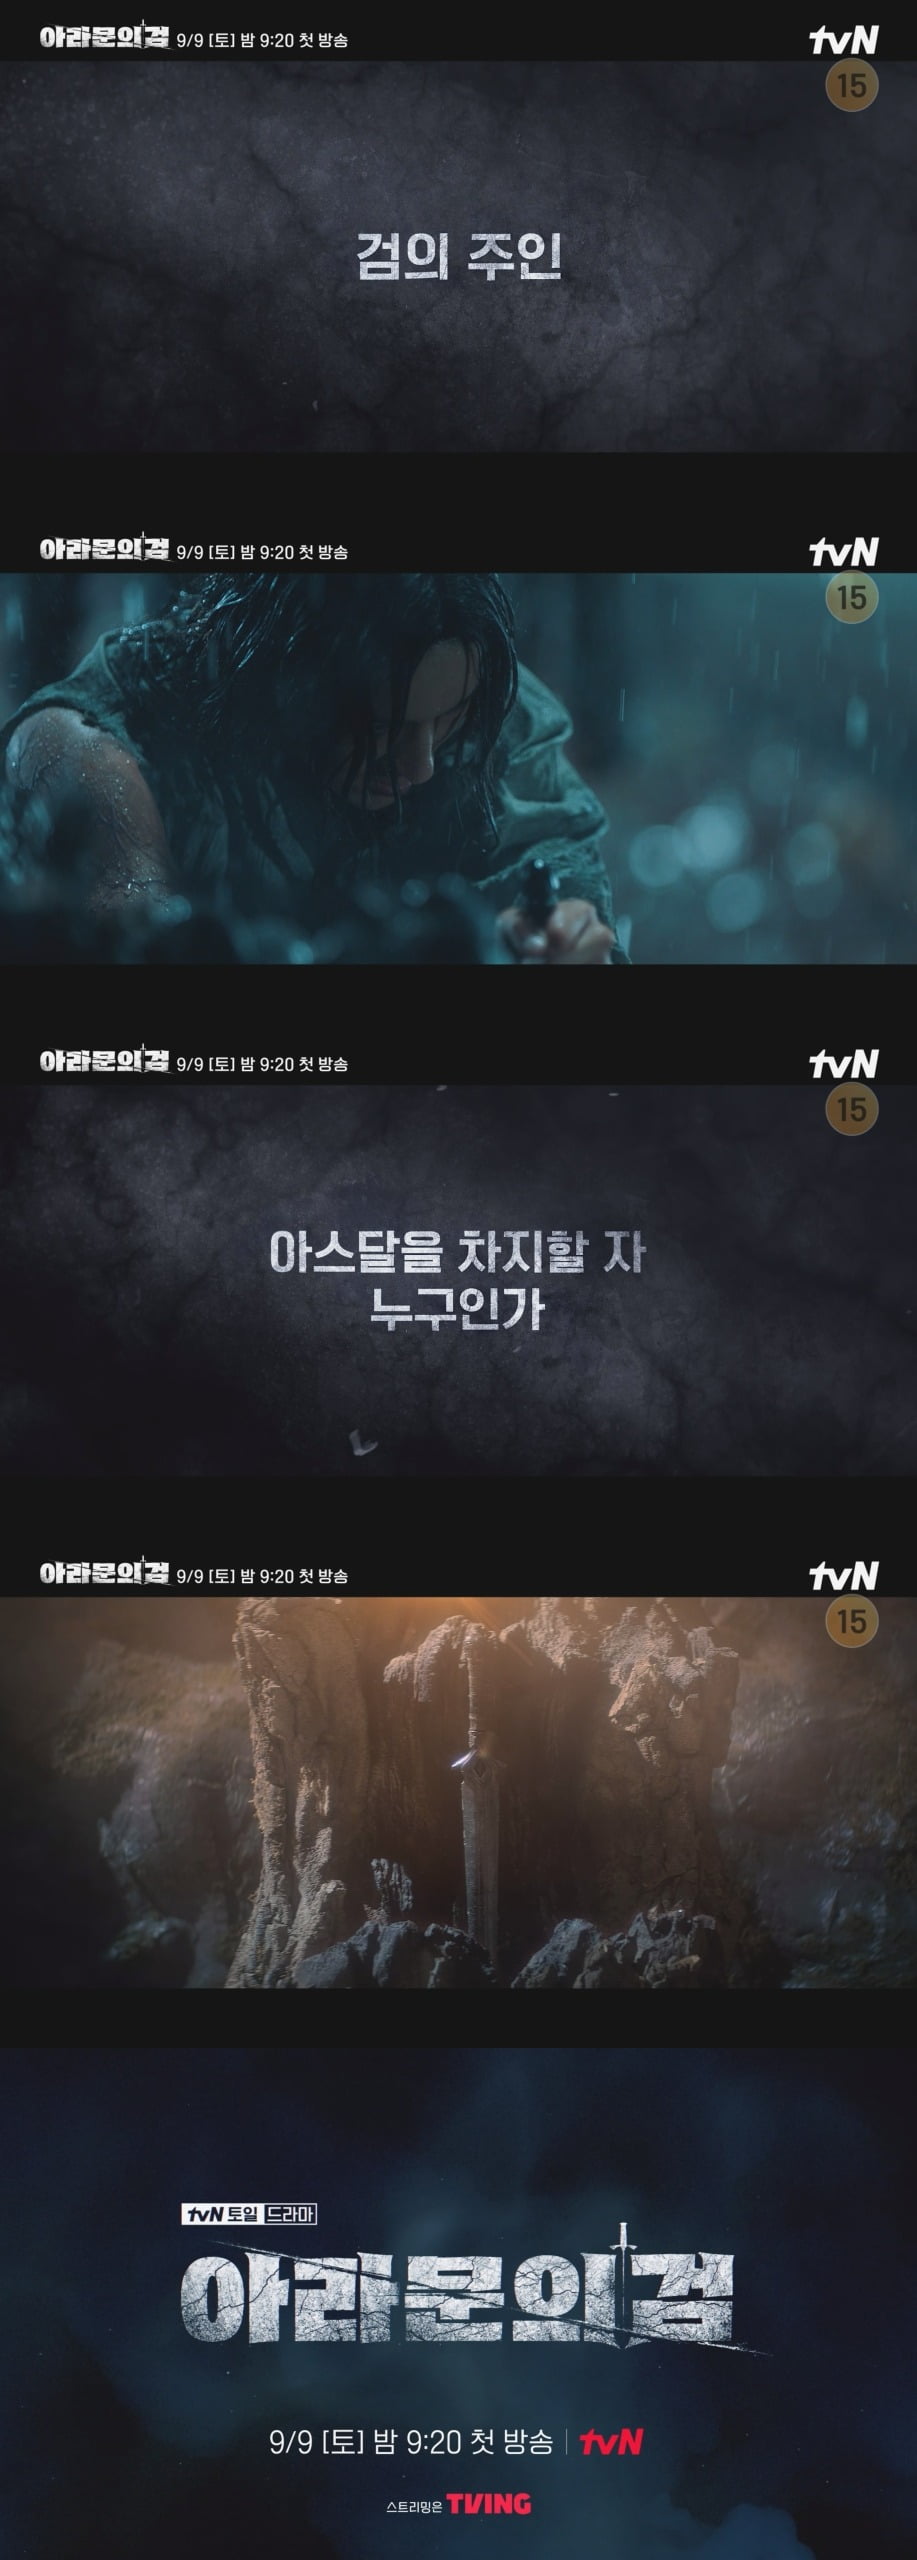 Drama 'Arthdal Chronicles 2', teaser video released